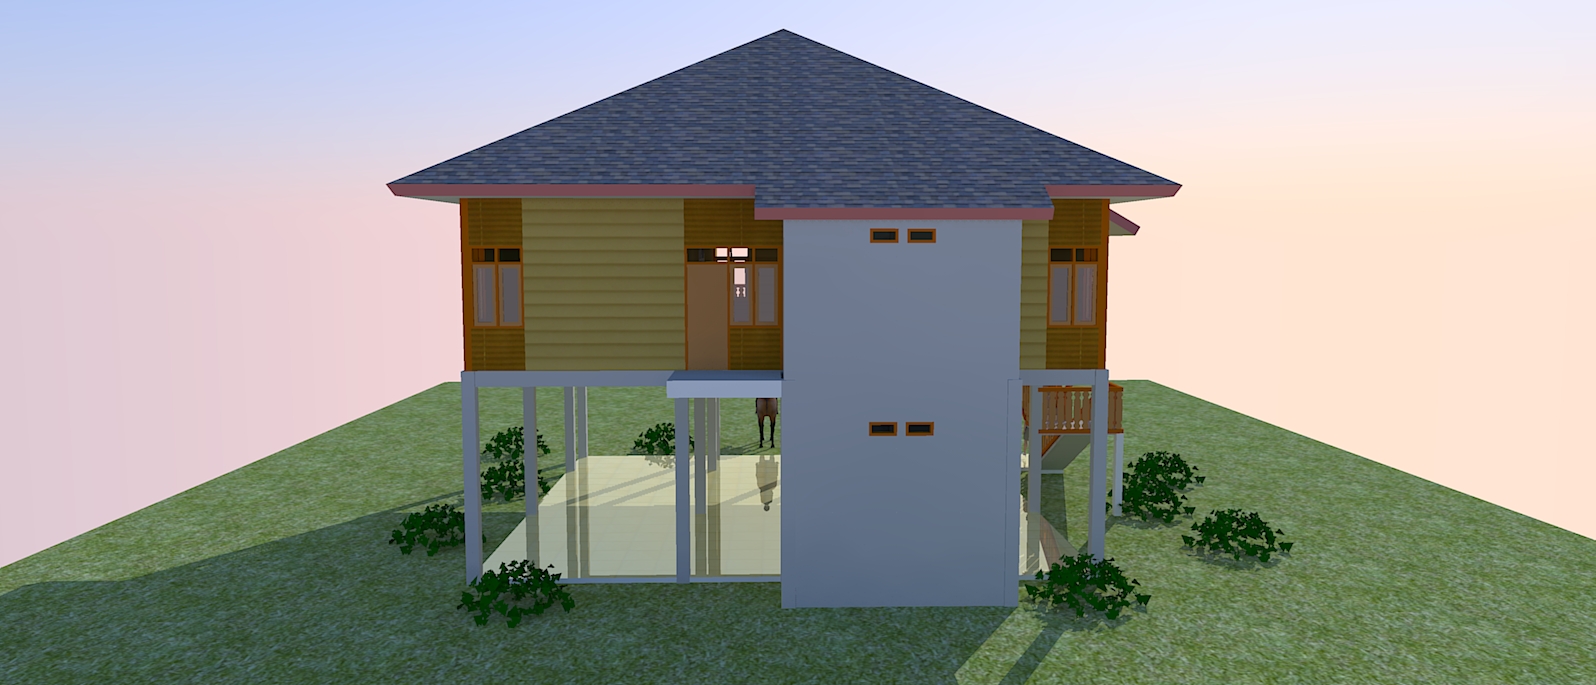 Rumah Kayu Jasa Site Plan